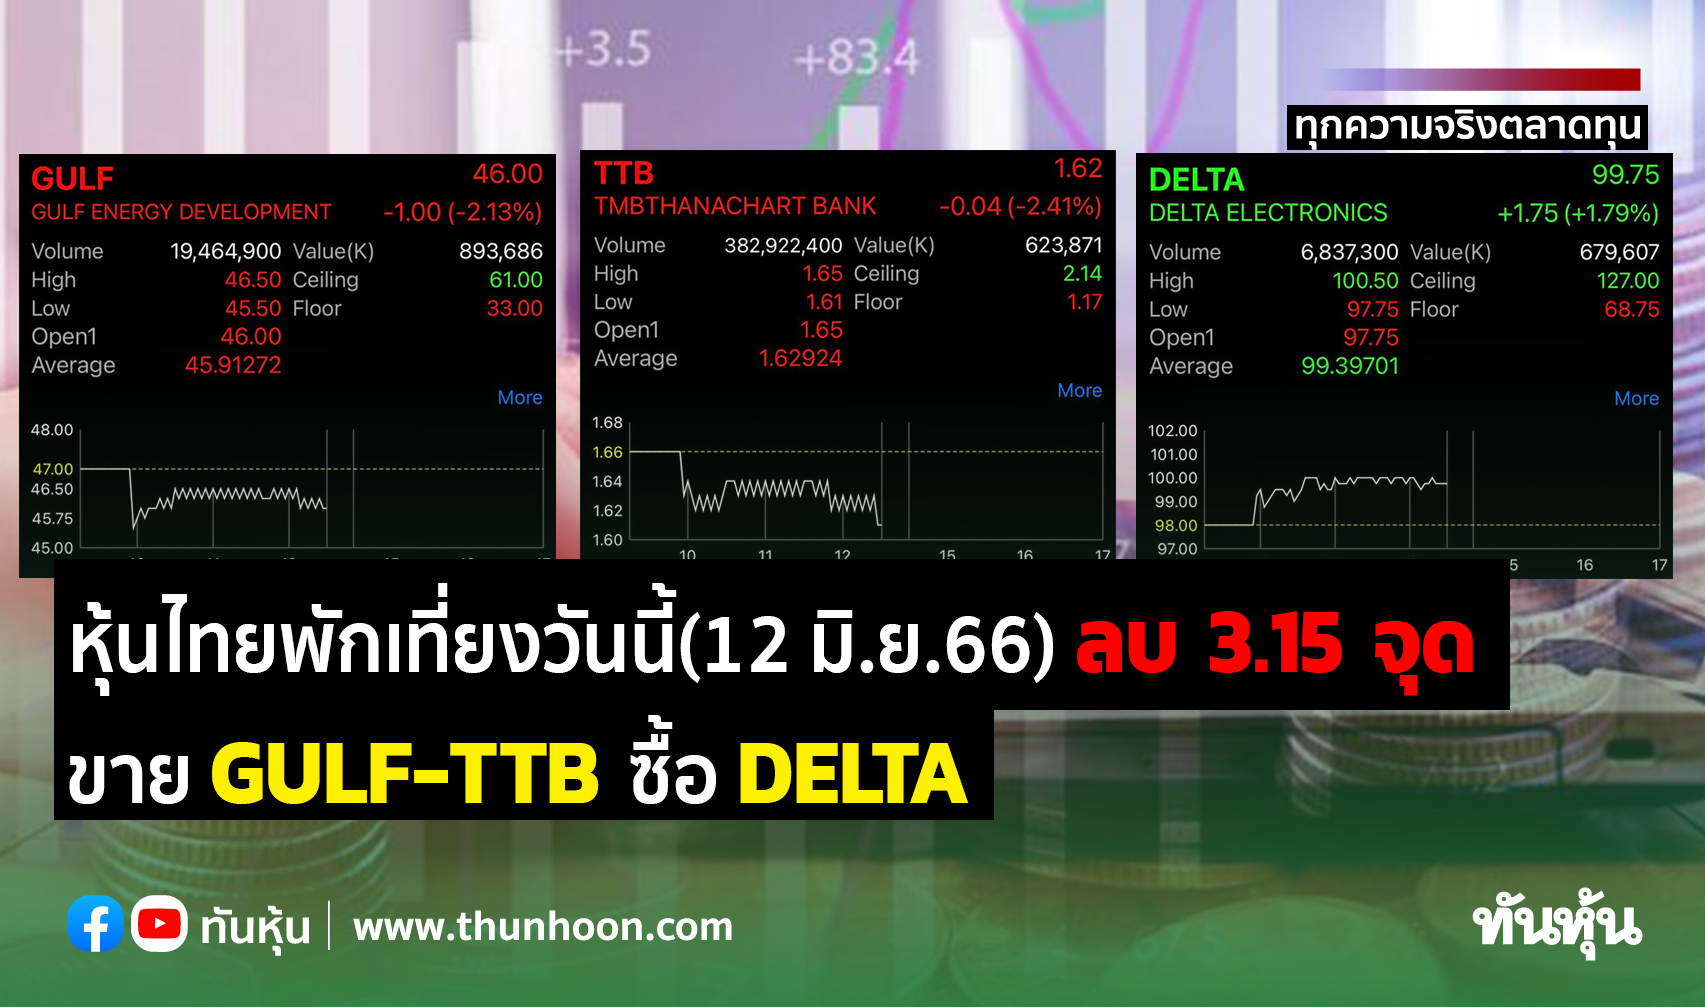 หุ้นไทยพักเที่ยงวันนี้(12 มิ.ย.66) ลบ 3.15 จุด ขาย Gulf-Ttb ซื้อ Delta -  Thunhoon